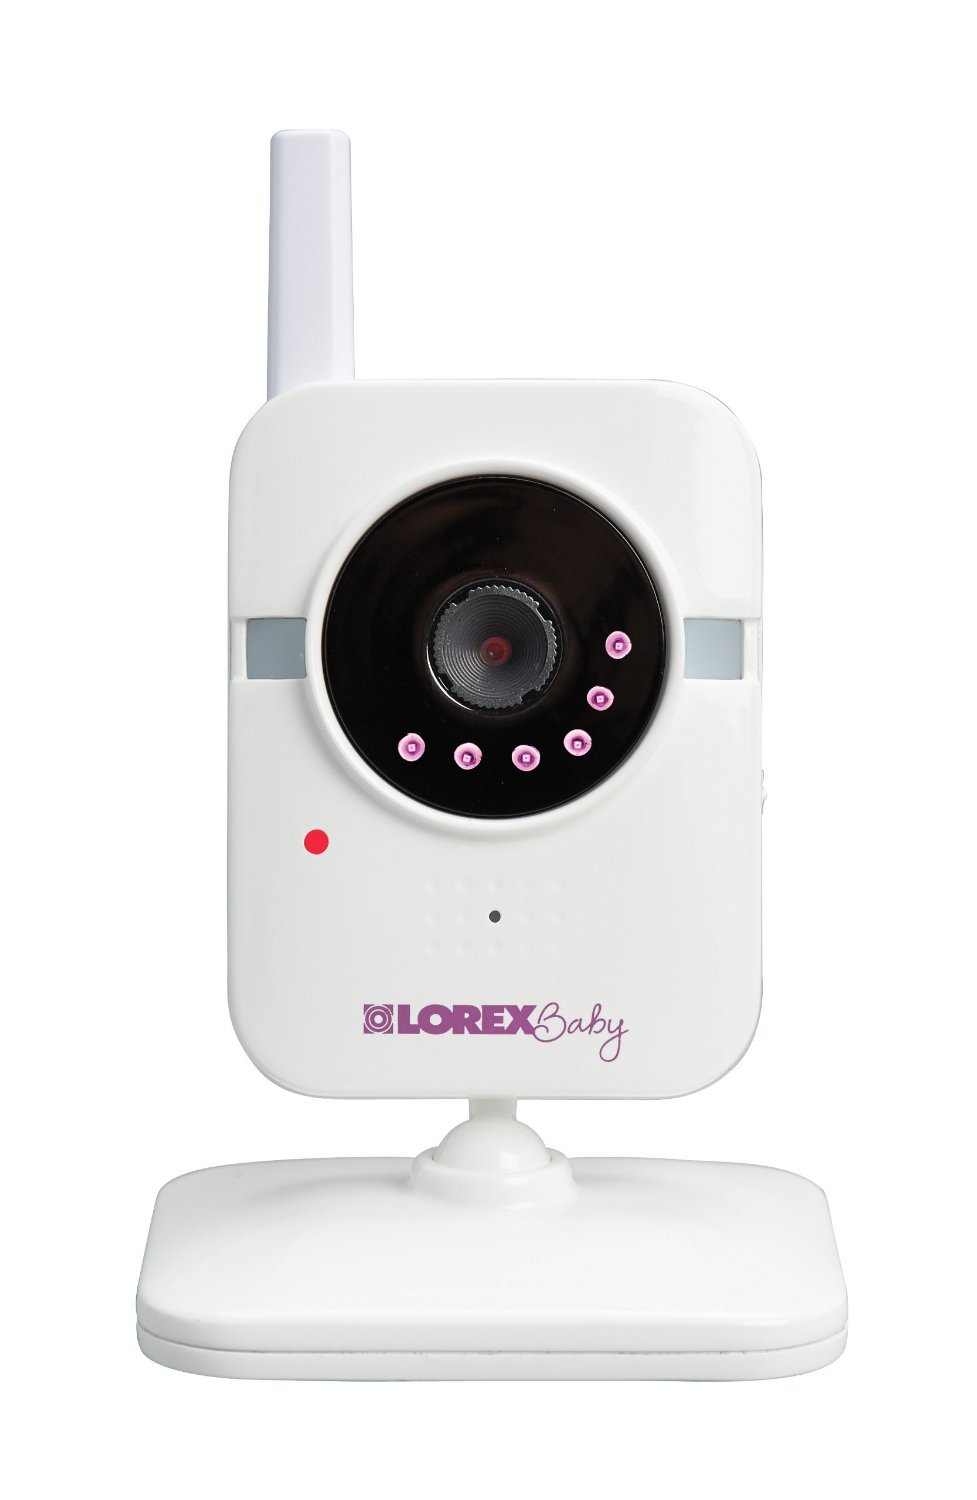 NEW Lorex Sweet Peep Add-On Wireless Baby Monitor Camera White FREE SHIPPING US